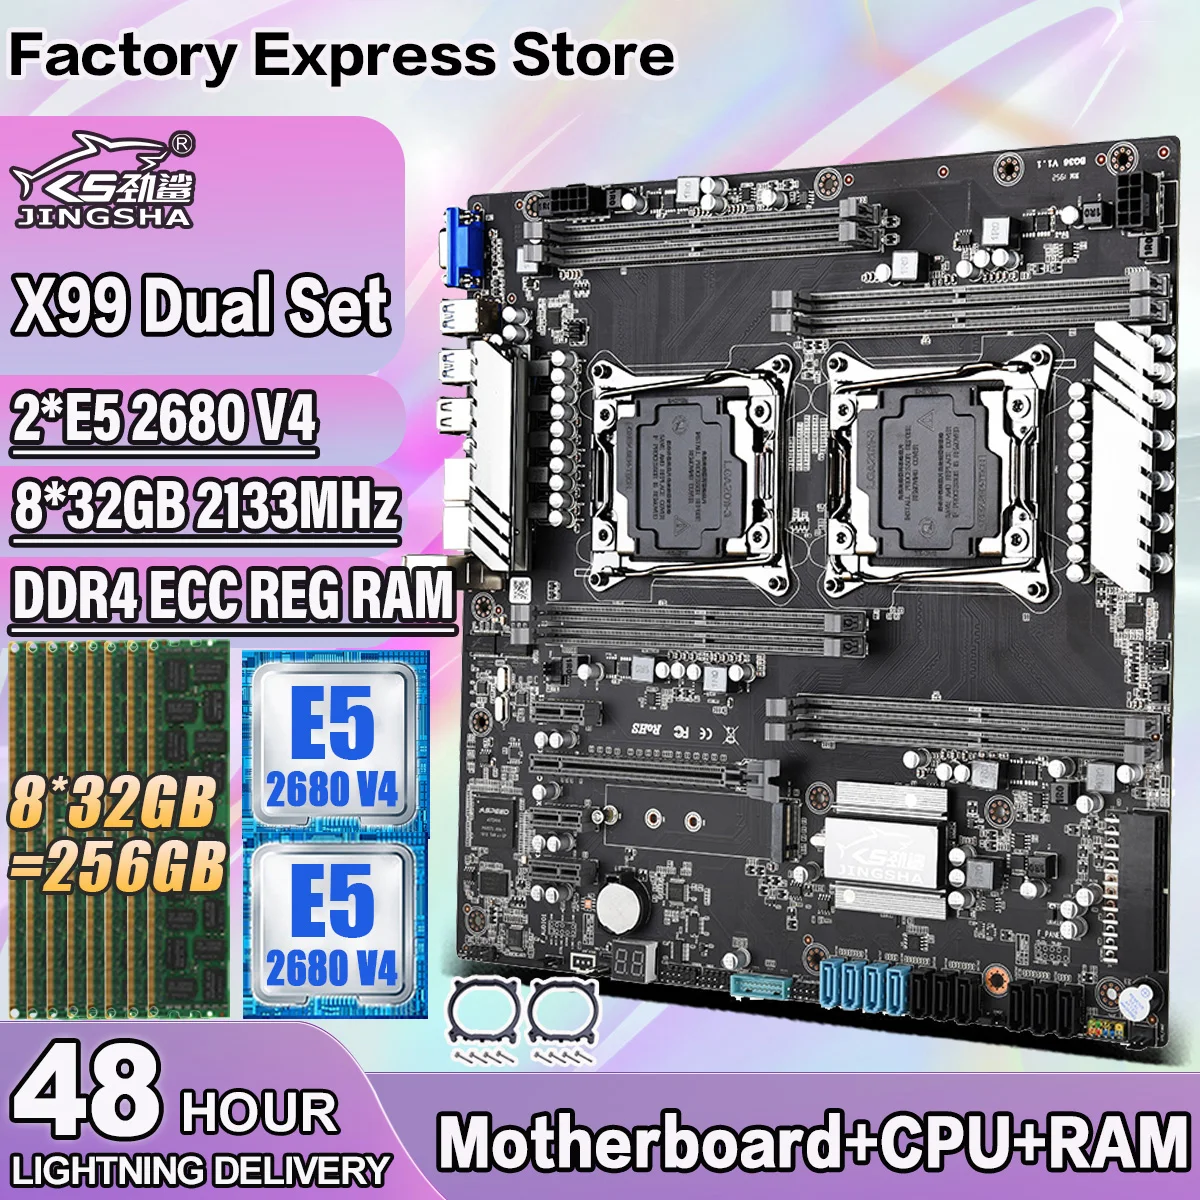 Комплект двоен дънната платка JINGSHA X99 с 2 * E5 2680 V4 и 8*32 GB = 256 GB оперативна памет DDR4 ECC REG 2133 Mhz С поддръжка на процесор Intel LGA 2011-3 V3/V40